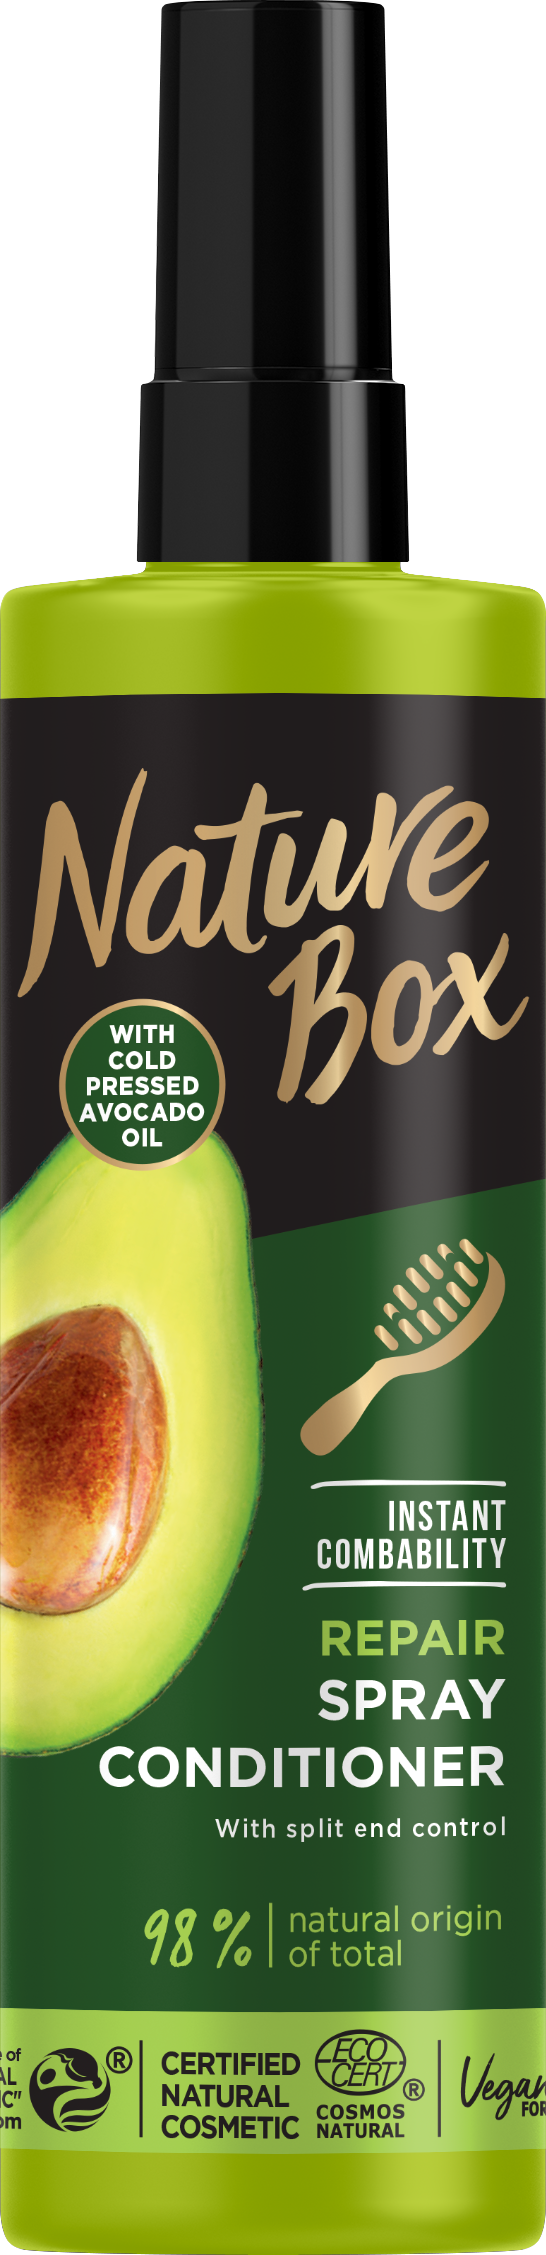 Экспресс-кондиционер Nature Box для восстановления волос и против секущихся кончиков, с маслом авокадо холодного отжима, 200 мл - фото 1